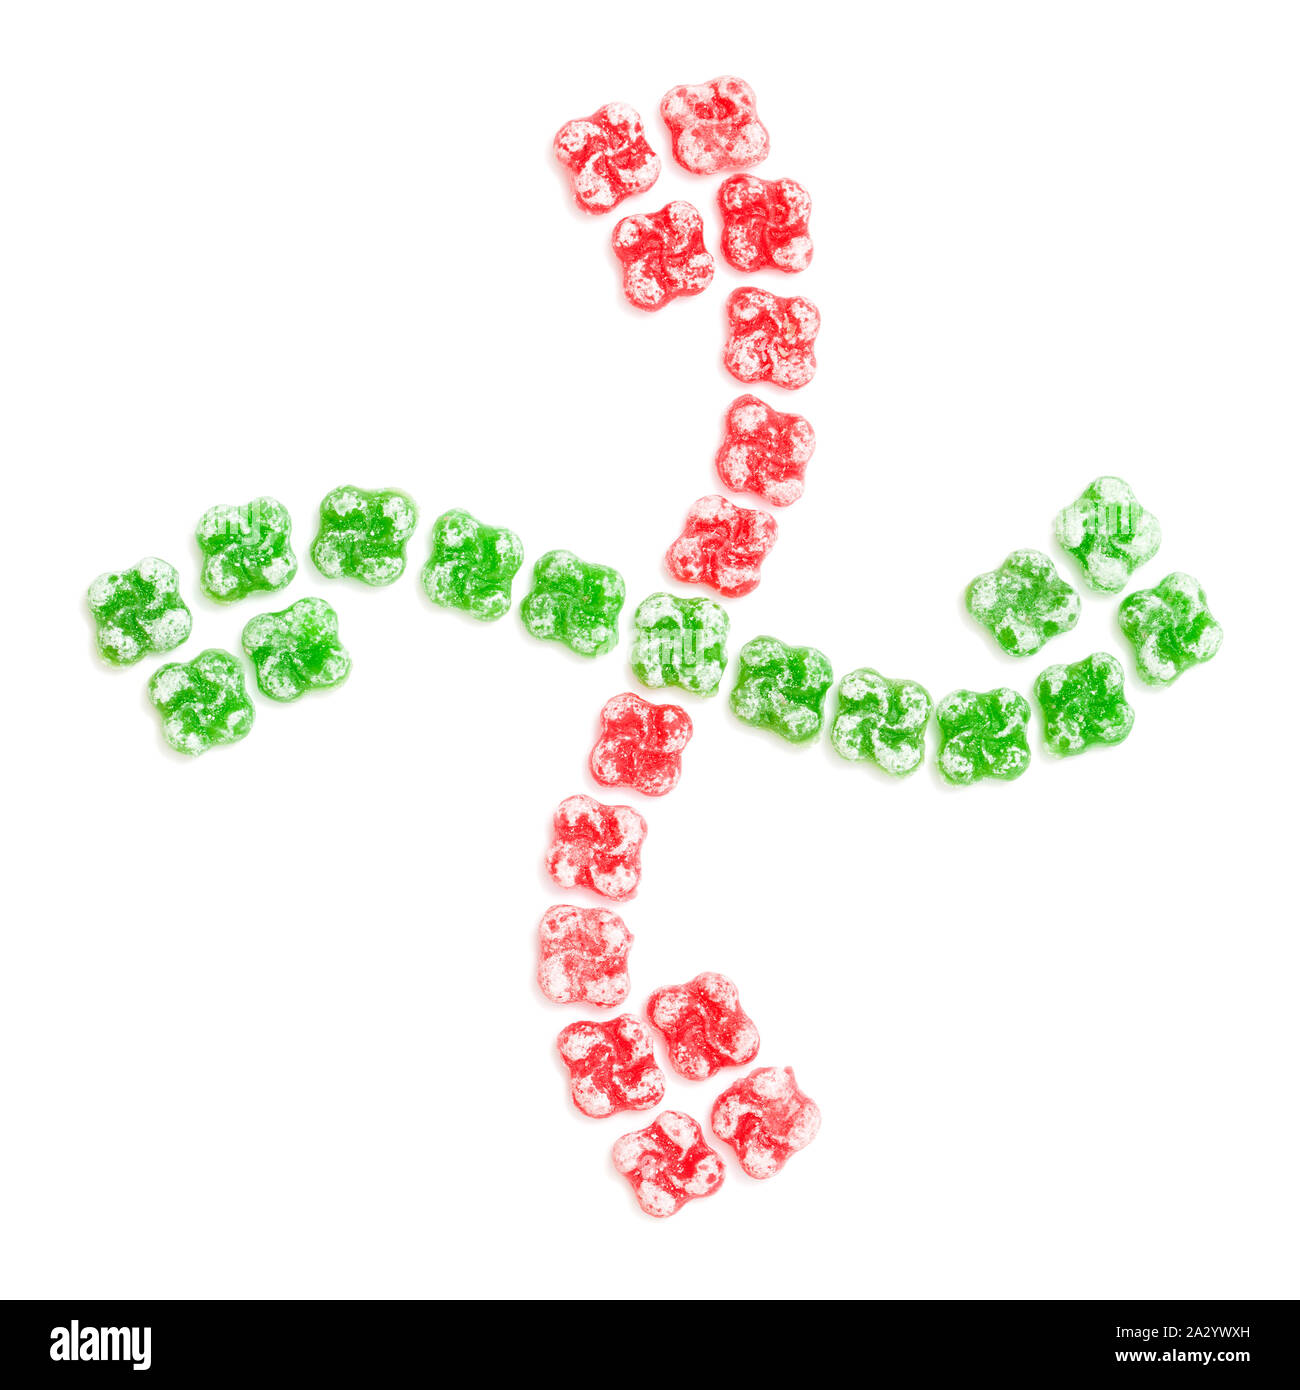 Bonbons durs en forme de croix Basque, lauburu, disposés dans la même forme, isolé sur fond blanc Banque D'Images